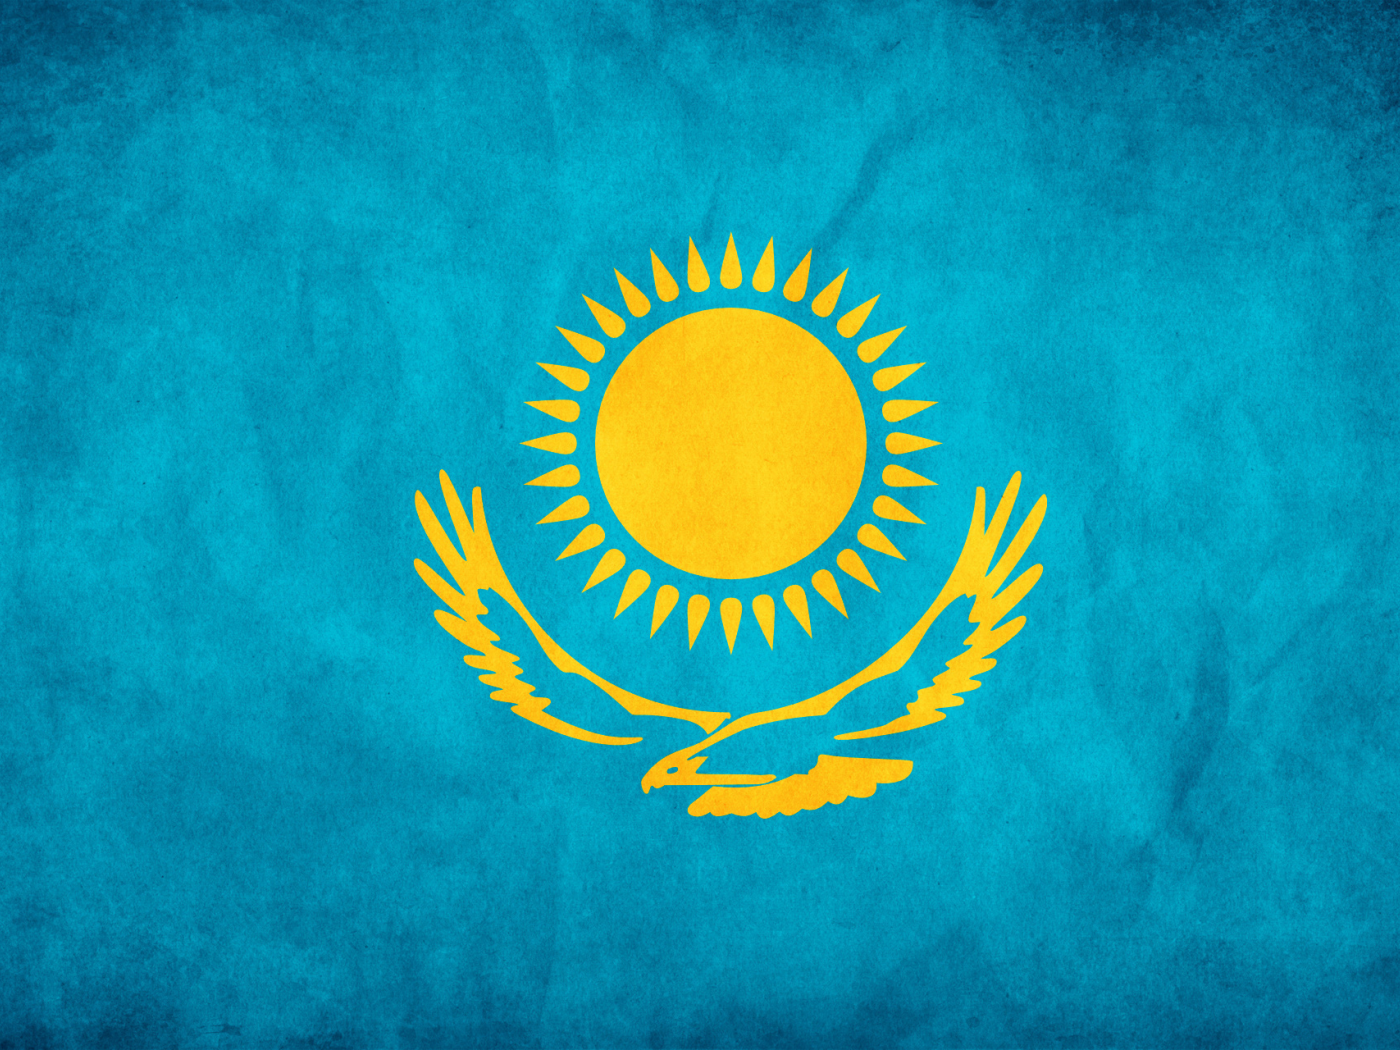 солнце, орел, флаг, казахстан, узоры